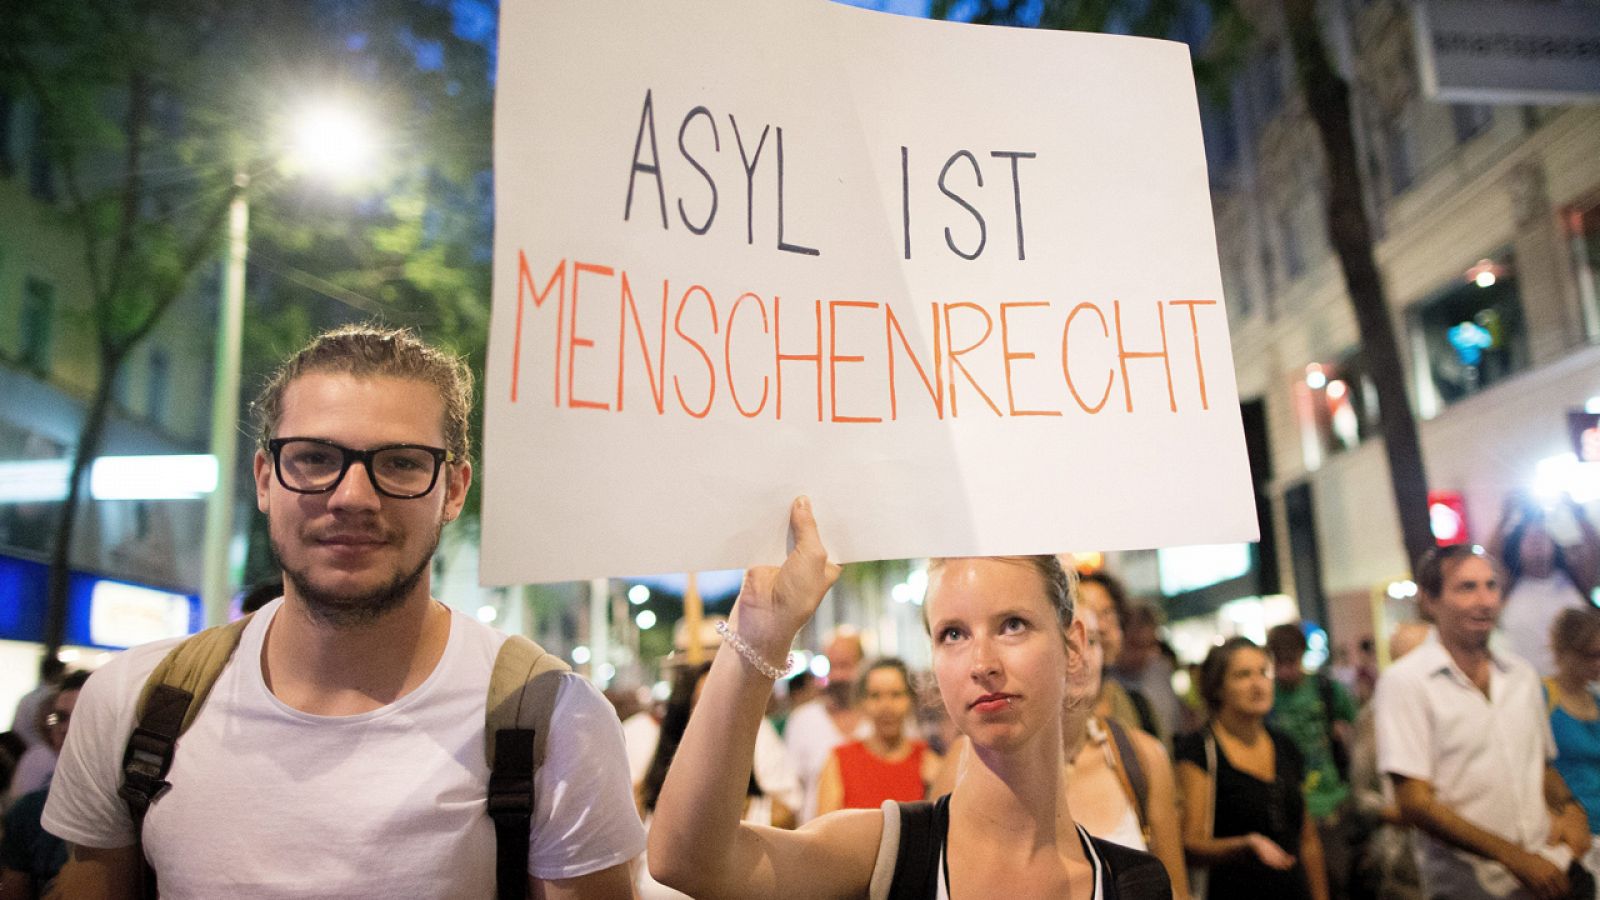 Una joven sujeta un cartel con las palabras "El derecho de asilo es un derecho humano" durante una manifestación para defender los derechos de los inmigrantes en Viena, Austria, hoy 31 de agosto de 2015.